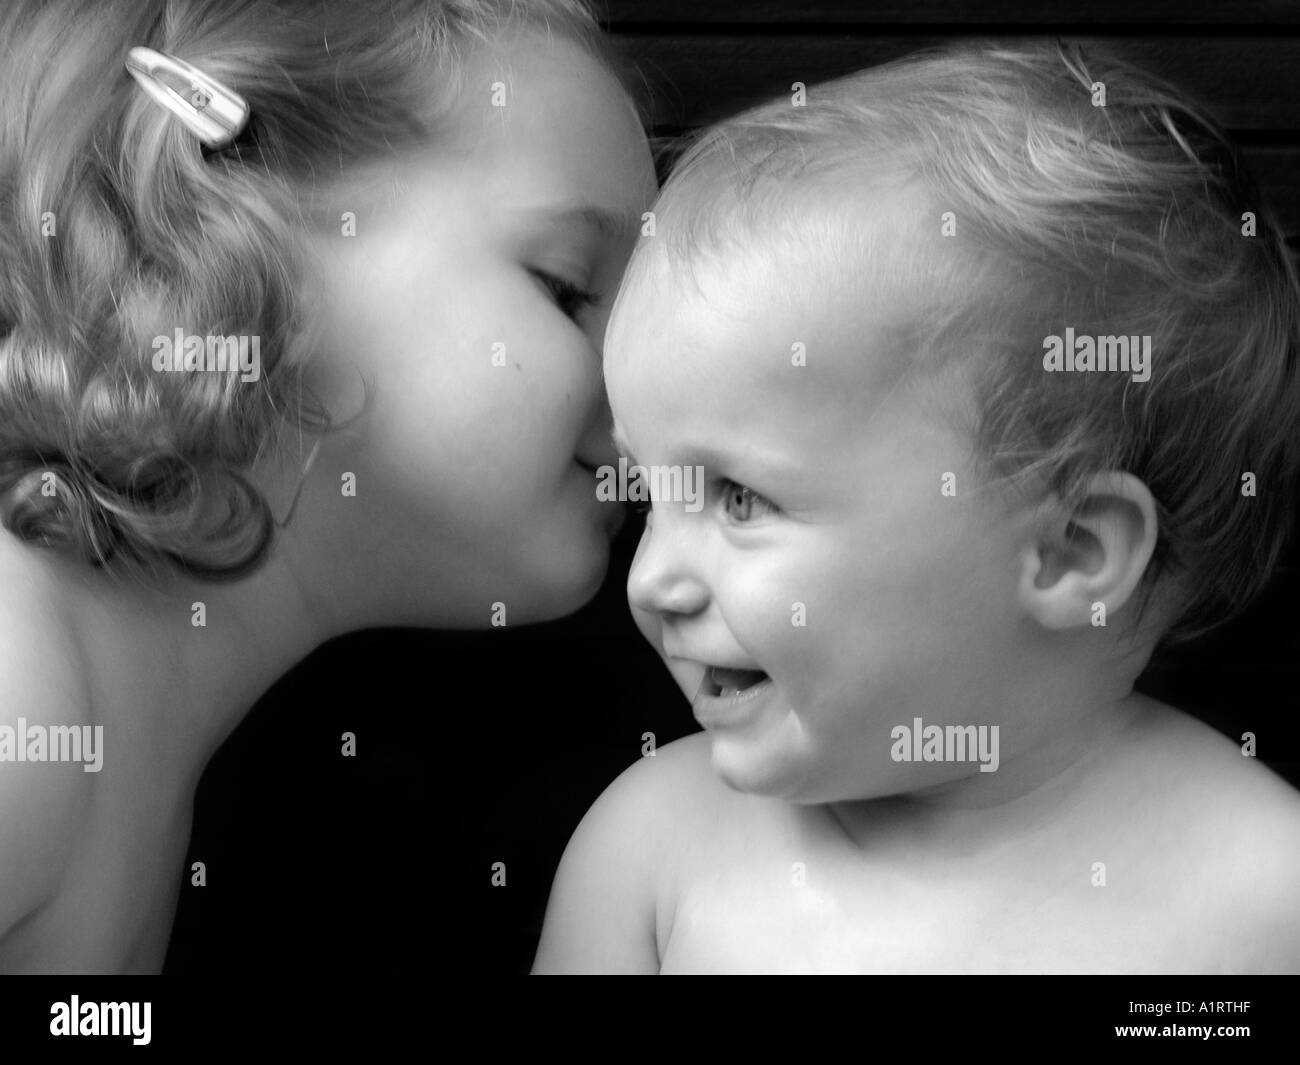 Porträts von zwei Säuglingen telling ein Geheimnis miteinander Stockfoto